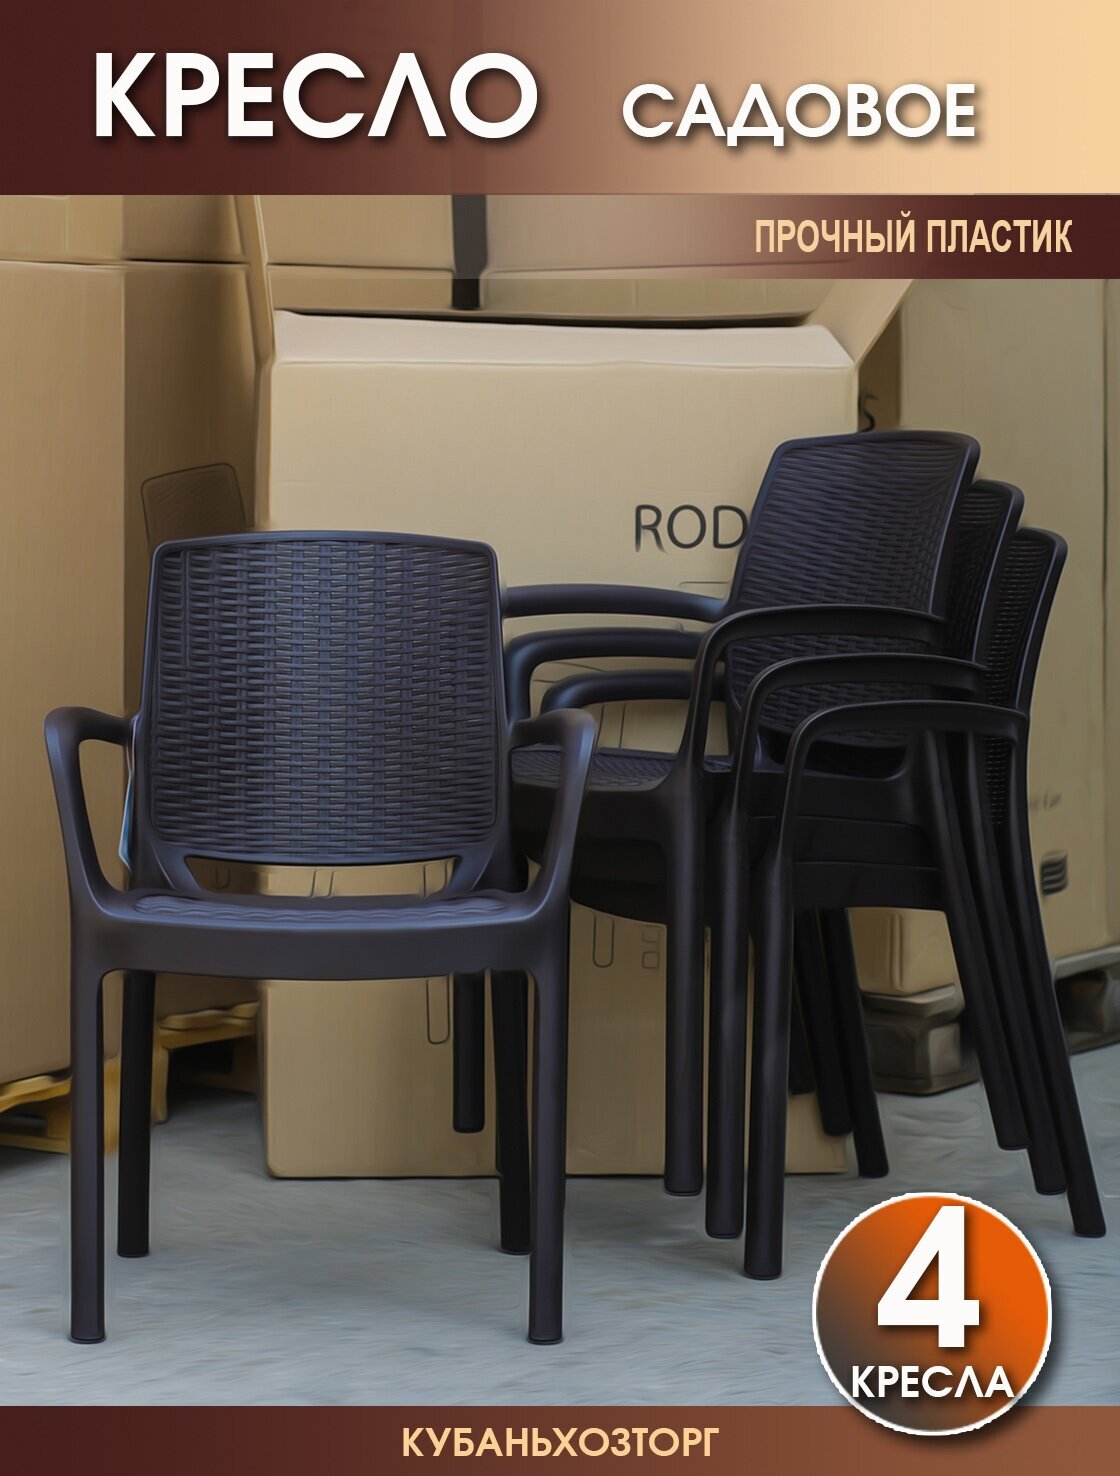 Кресло пластиковое RODOS комплект из 4-х стульев для сада и дачи: высота 80 см ширина 60 см глубина 55 см высота сиденья 44 см. Бежевый